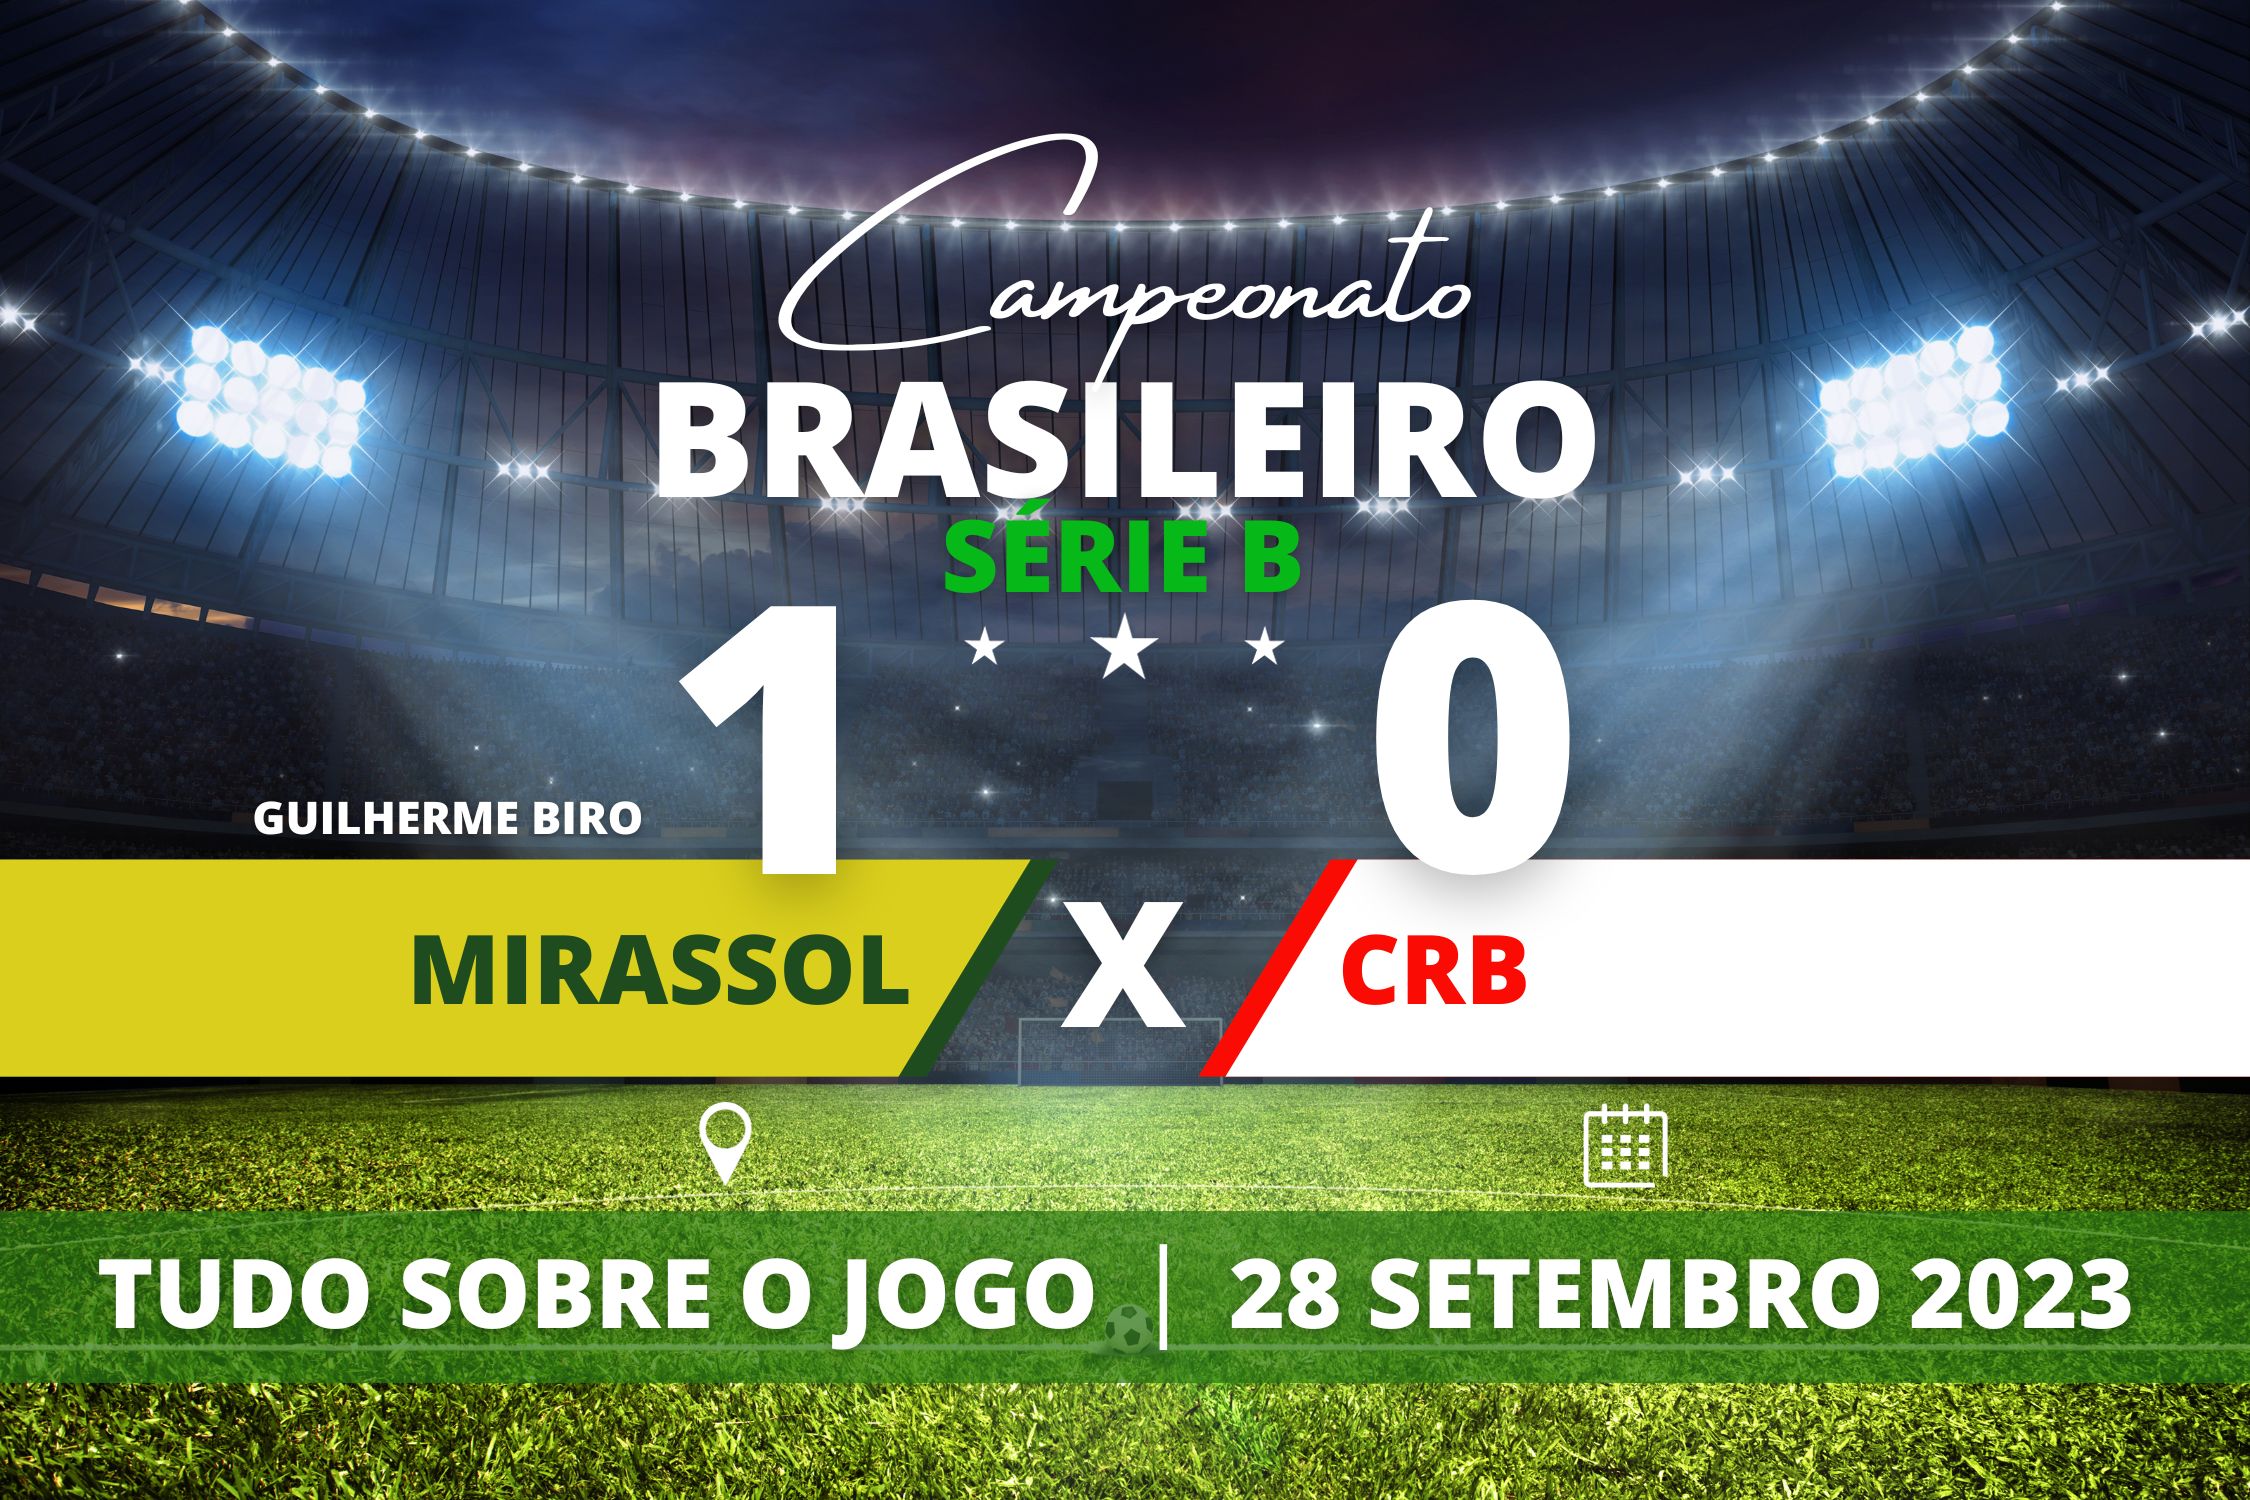 Mirassol 1 x 0 CRB - Em casa, Mirassol criou as melhores chances e Guilherme Biro fez o gol da vitória contra o CRB em partida válida pela 30° rodada do Campeonato Brasileiro da Série B.